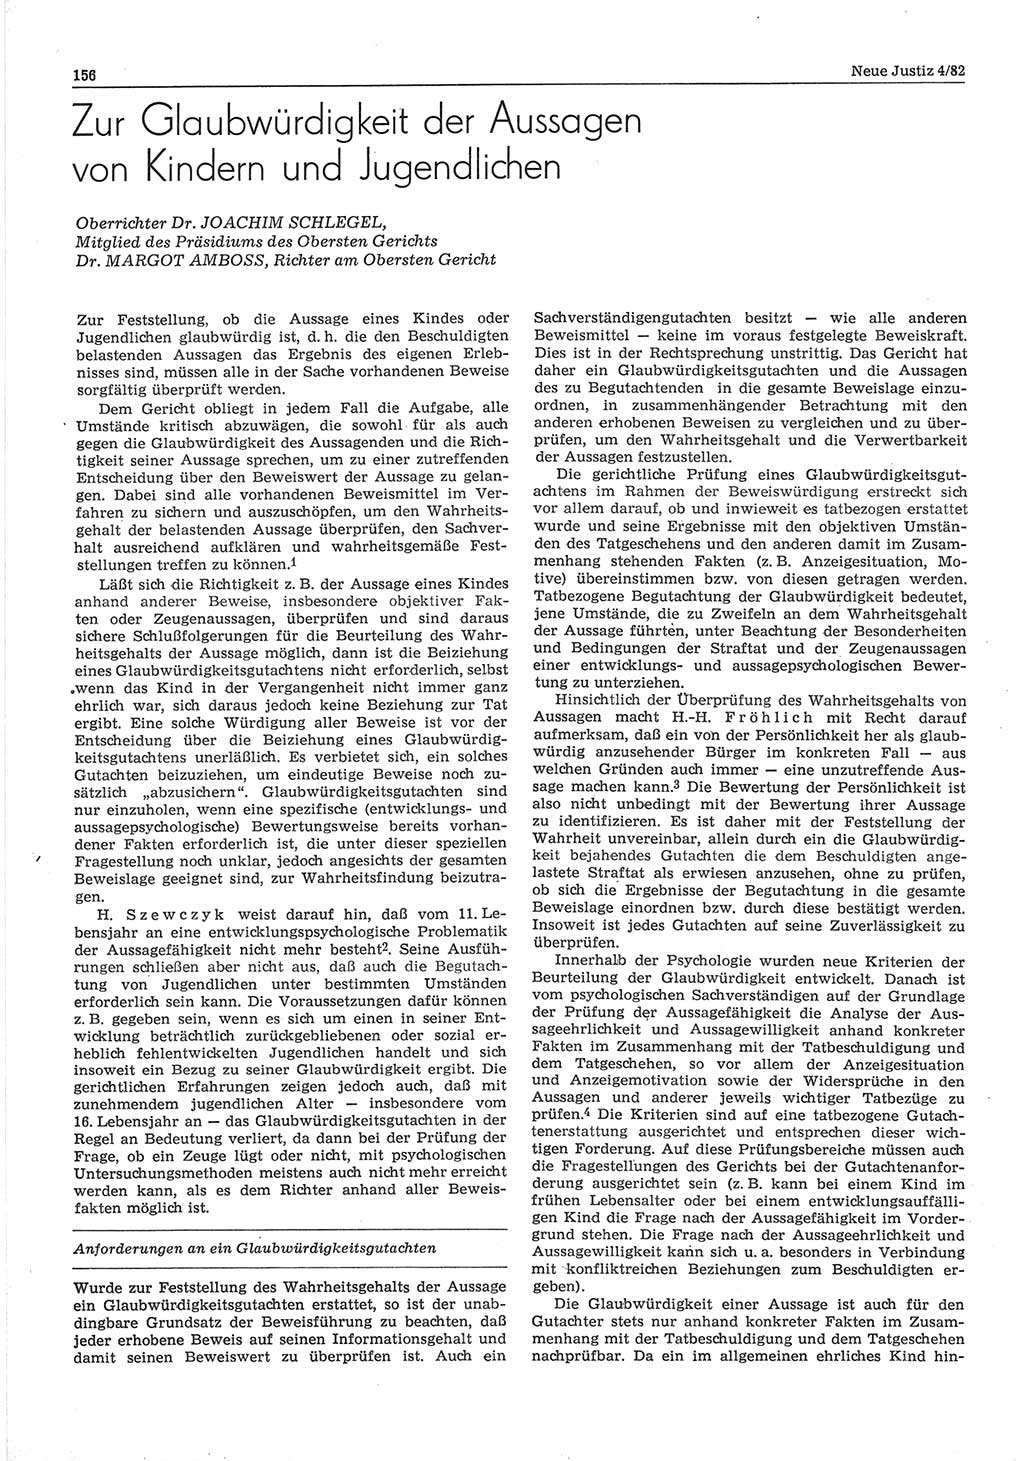 Neue Justiz (NJ), Zeitschrift für sozialistisches Recht und Gesetzlichkeit [Deutsche Demokratische Republik (DDR)], 36. Jahrgang 1982, Seite 156 (NJ DDR 1982, S. 156)